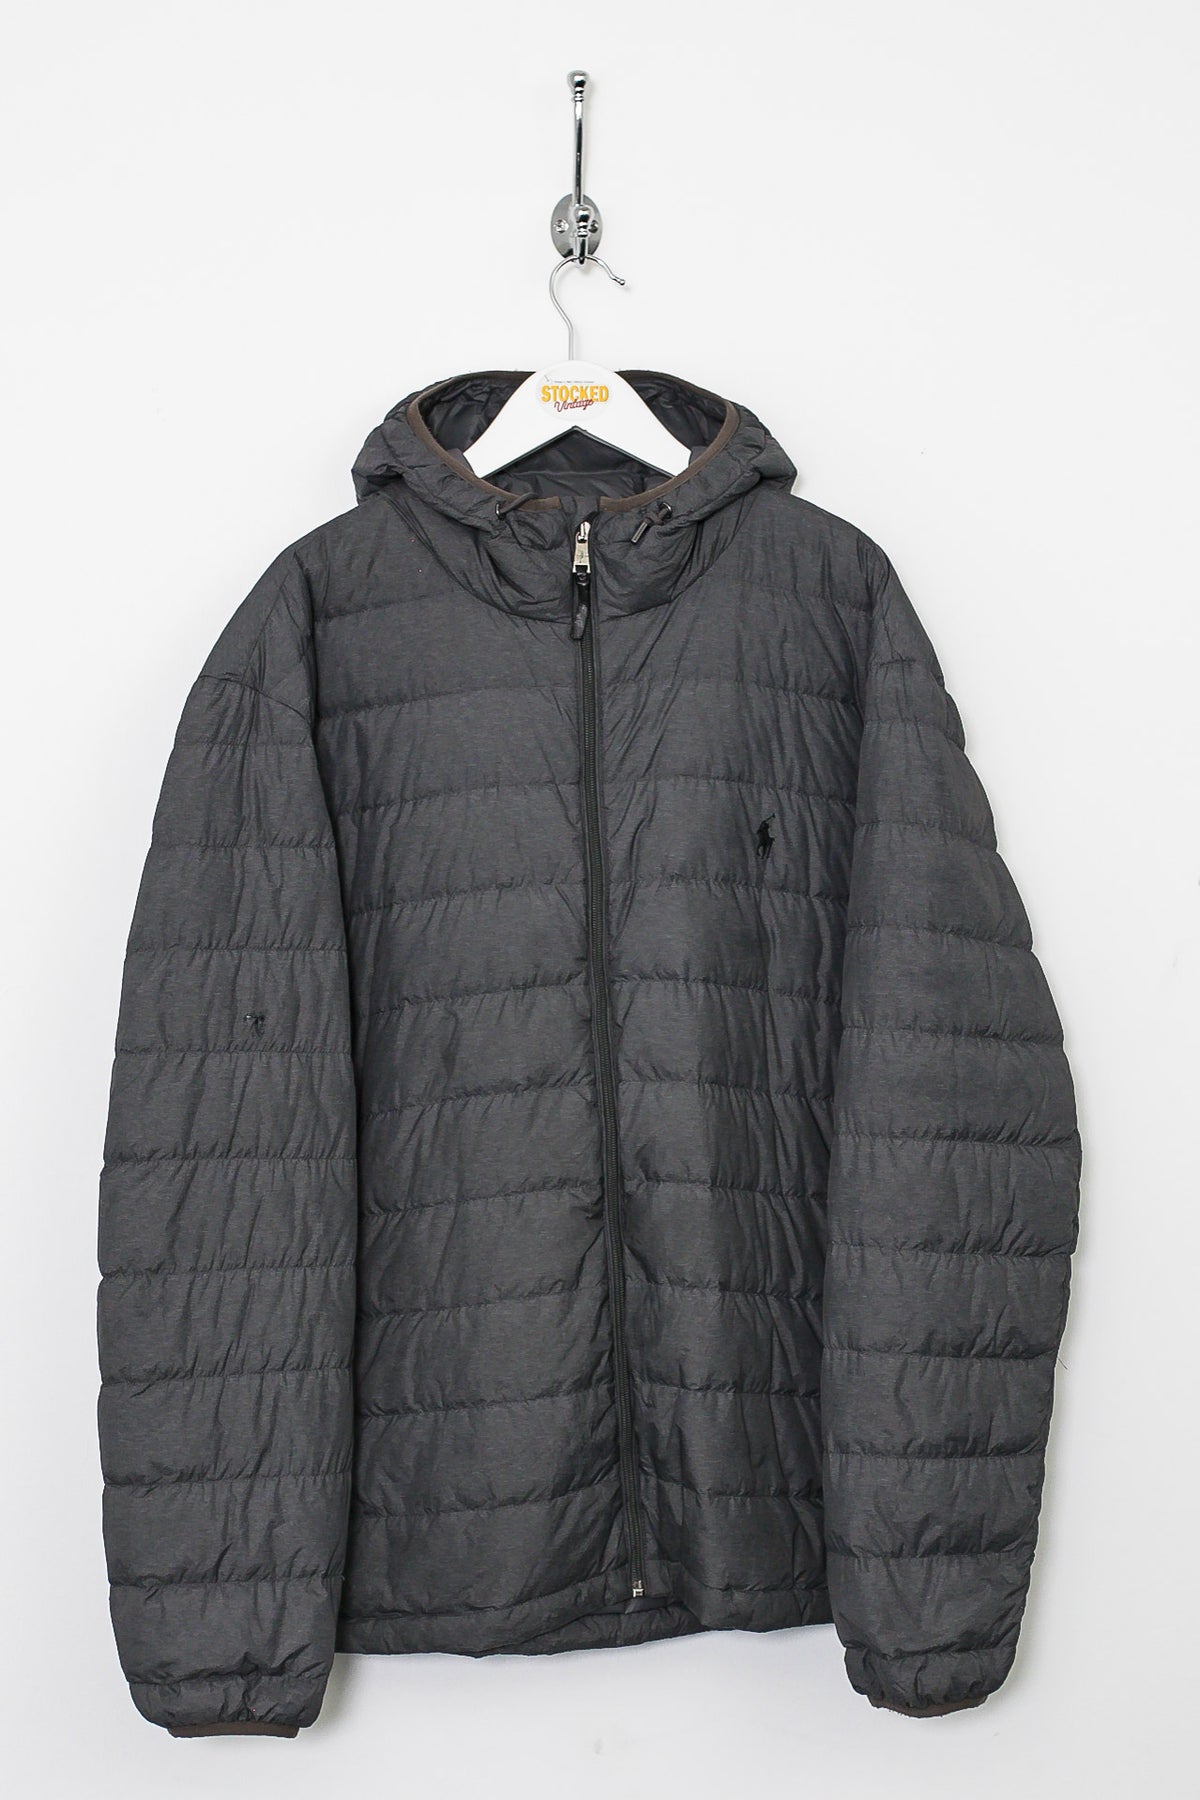 Ralph Lauren Puffer Jacket (XL)